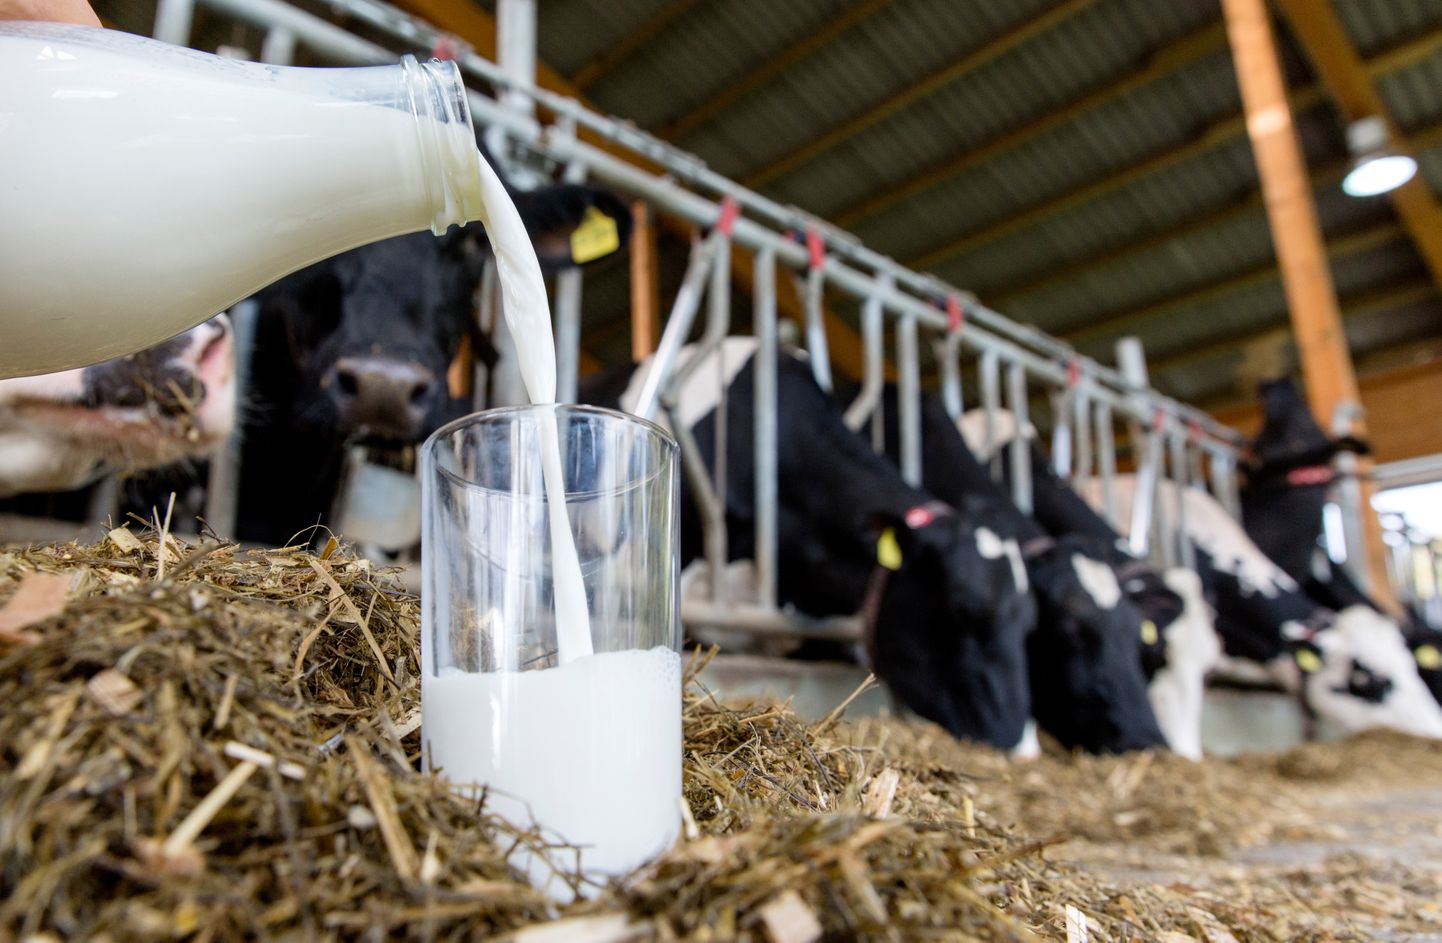 Neljas Eesti maakonnas ületab keskmine piimatoodang lausa 10 000 kilogrammi. Selle näitaja poolest oleme Euroopas teisel kohal, püüdes Taanit kätte saada.